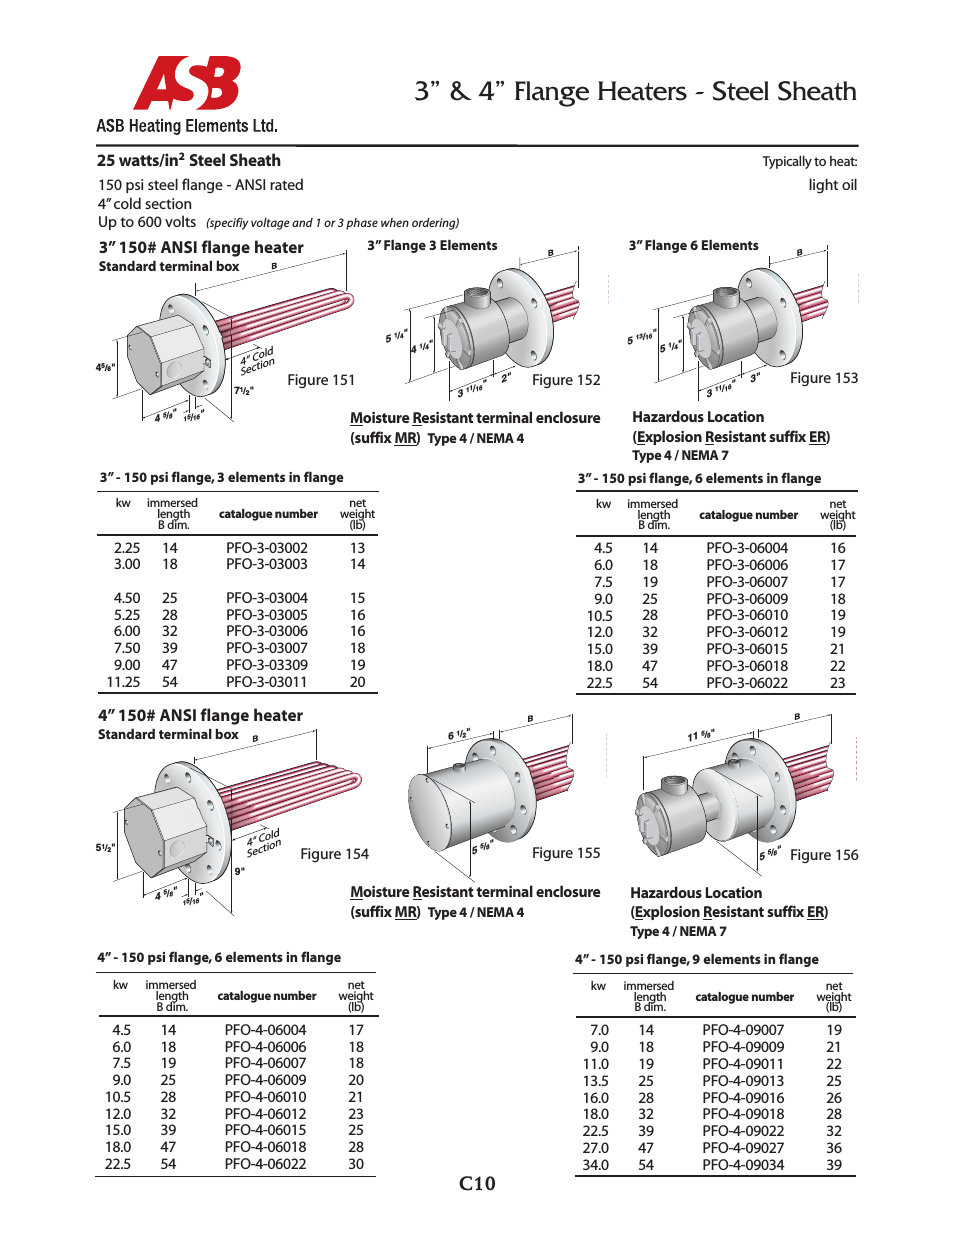 3” & 4” Flange Heaters - 25 watts - Steel Sheath